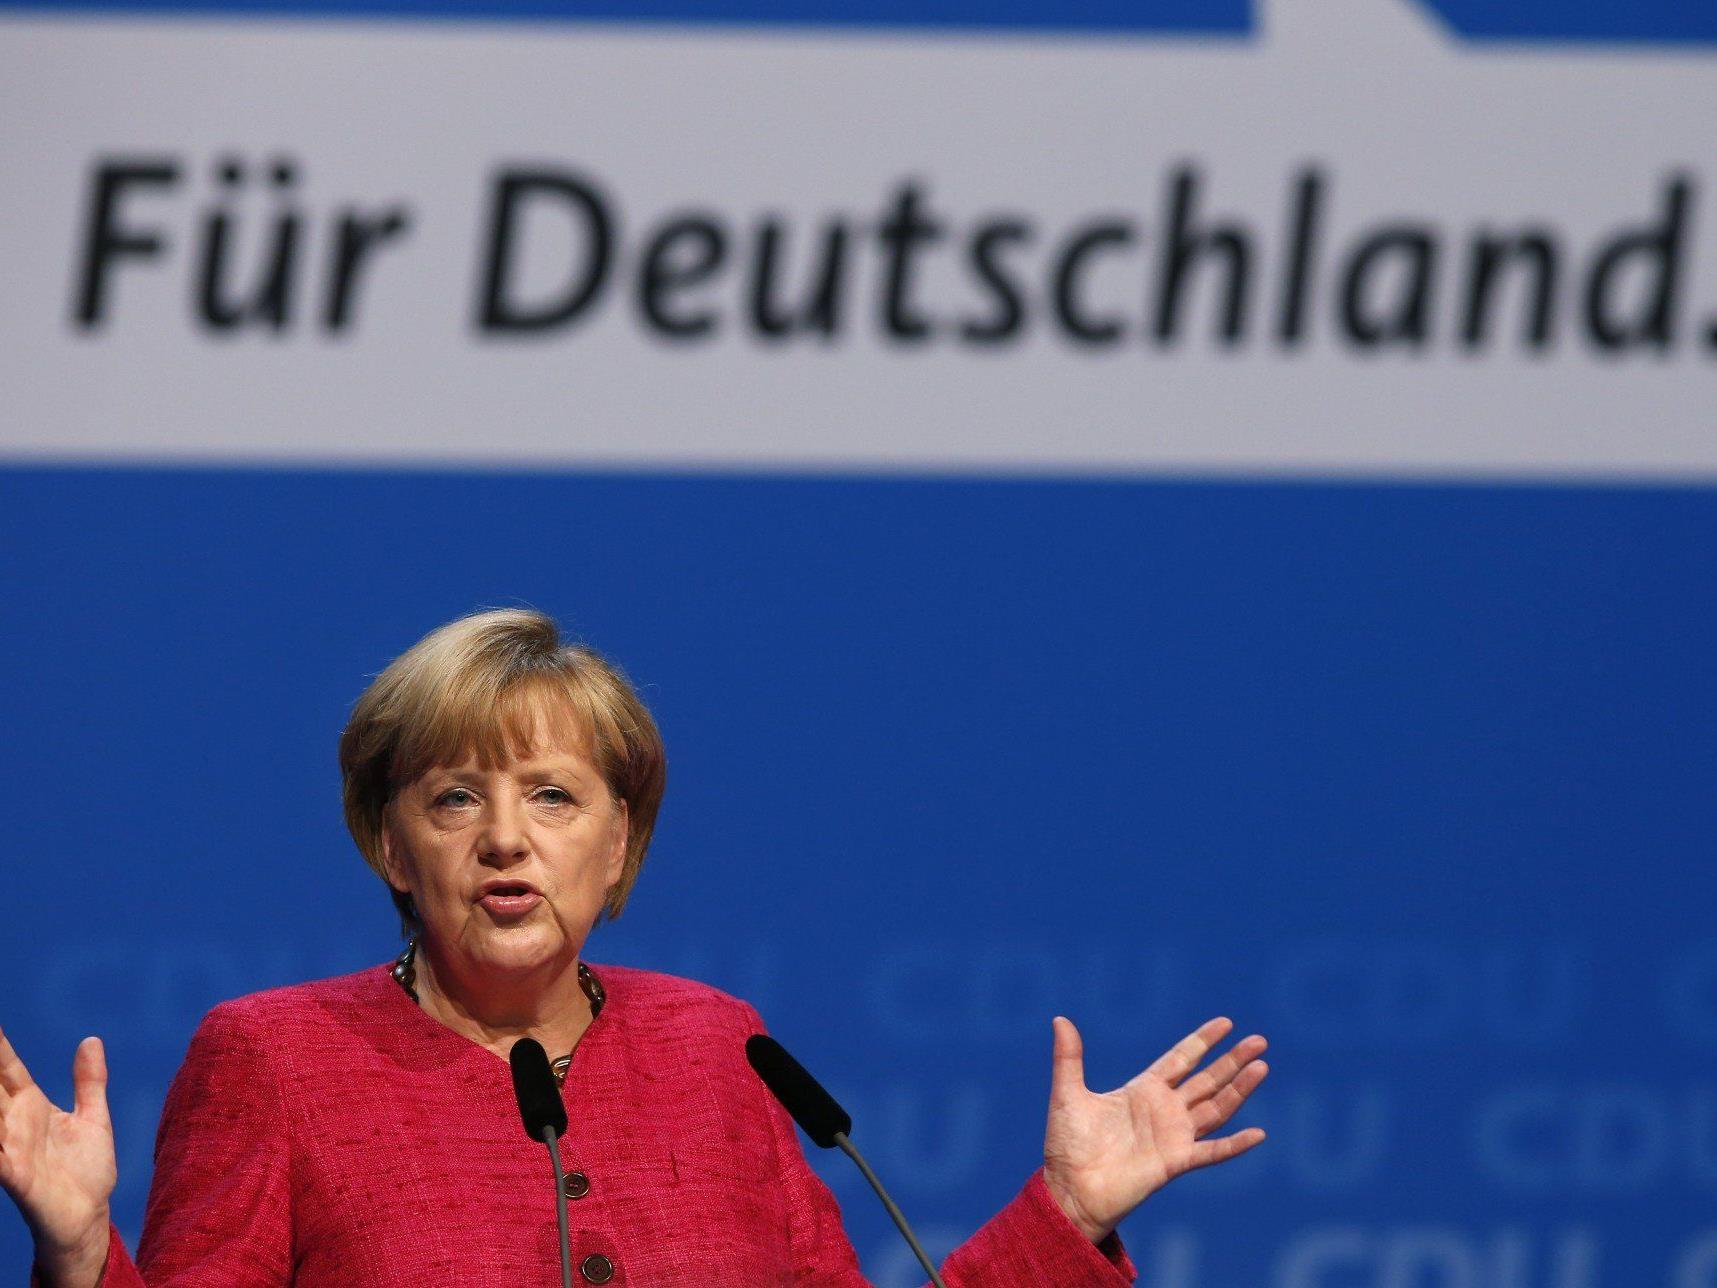 Letzte Umfragen gehen von Patt der Lager aus - Merkel dürfte Kanzlerin bleiben, nur Partner offen.